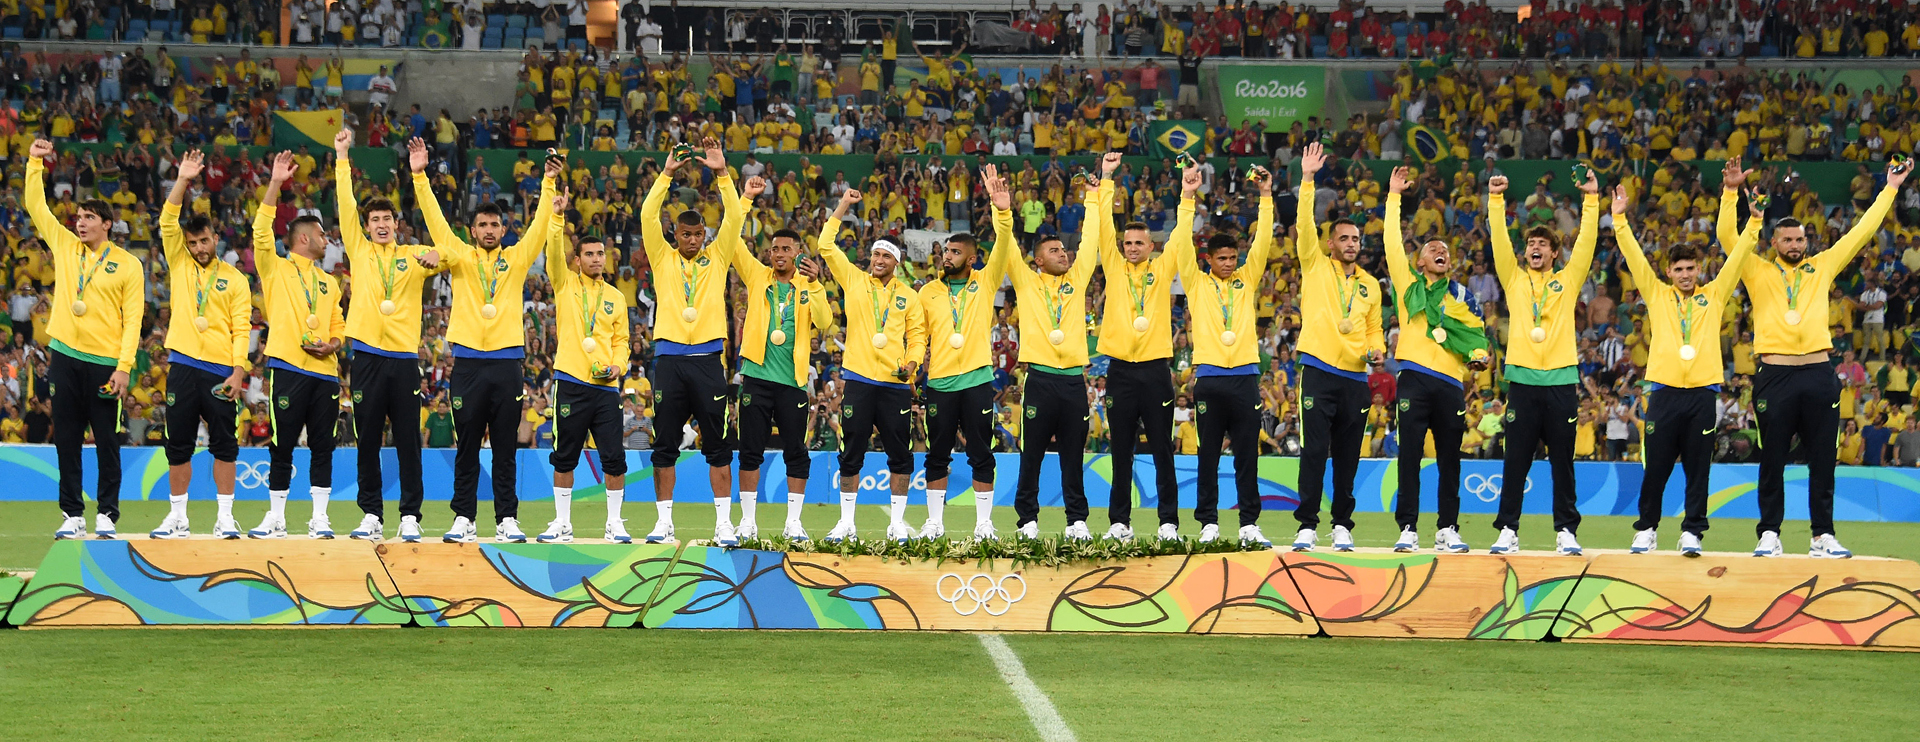 Brasil clausura la fiesta olímpica con el oro más deseado: Se acaban los juegos